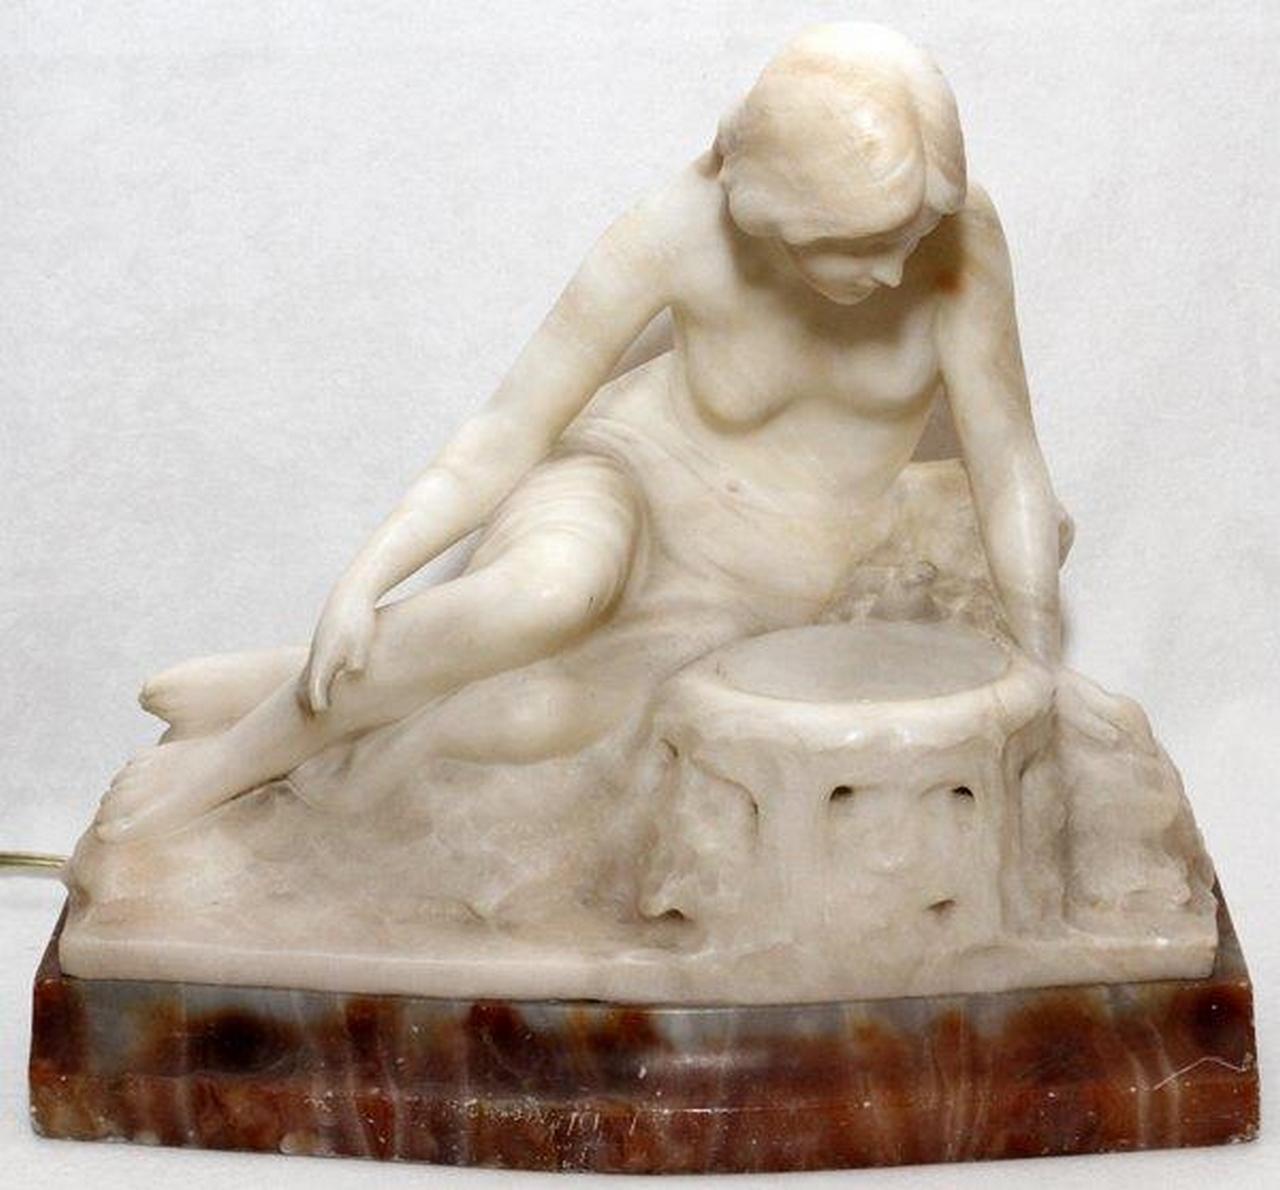 L'article suivant est une lampe en marbre blanc et albâtre de qualité musée représentant une femme nue assise sur un rocher, œuvre de l'artiste Ferdinando Vichi (1875-1925), vers 1895. Signé F. Vichi Fabriqué en Italie. 
Dimensions : 11